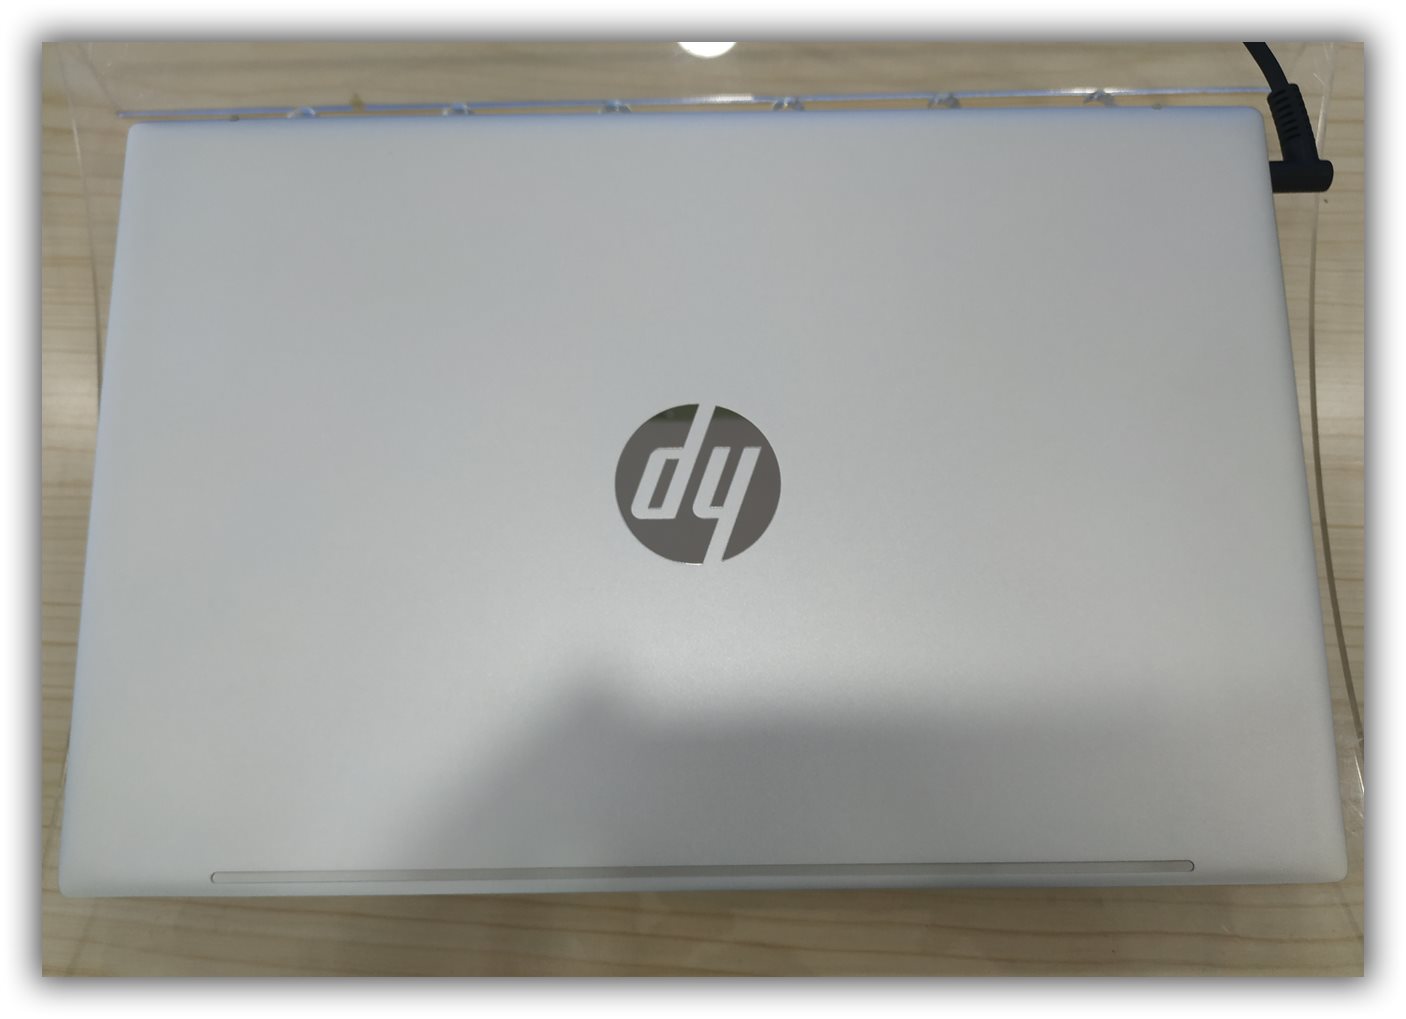 【实战系列】惠普HP星13超薄笔记本2021款intelCPU11代平台raid硬盘完美重装WIN10 21H1系统